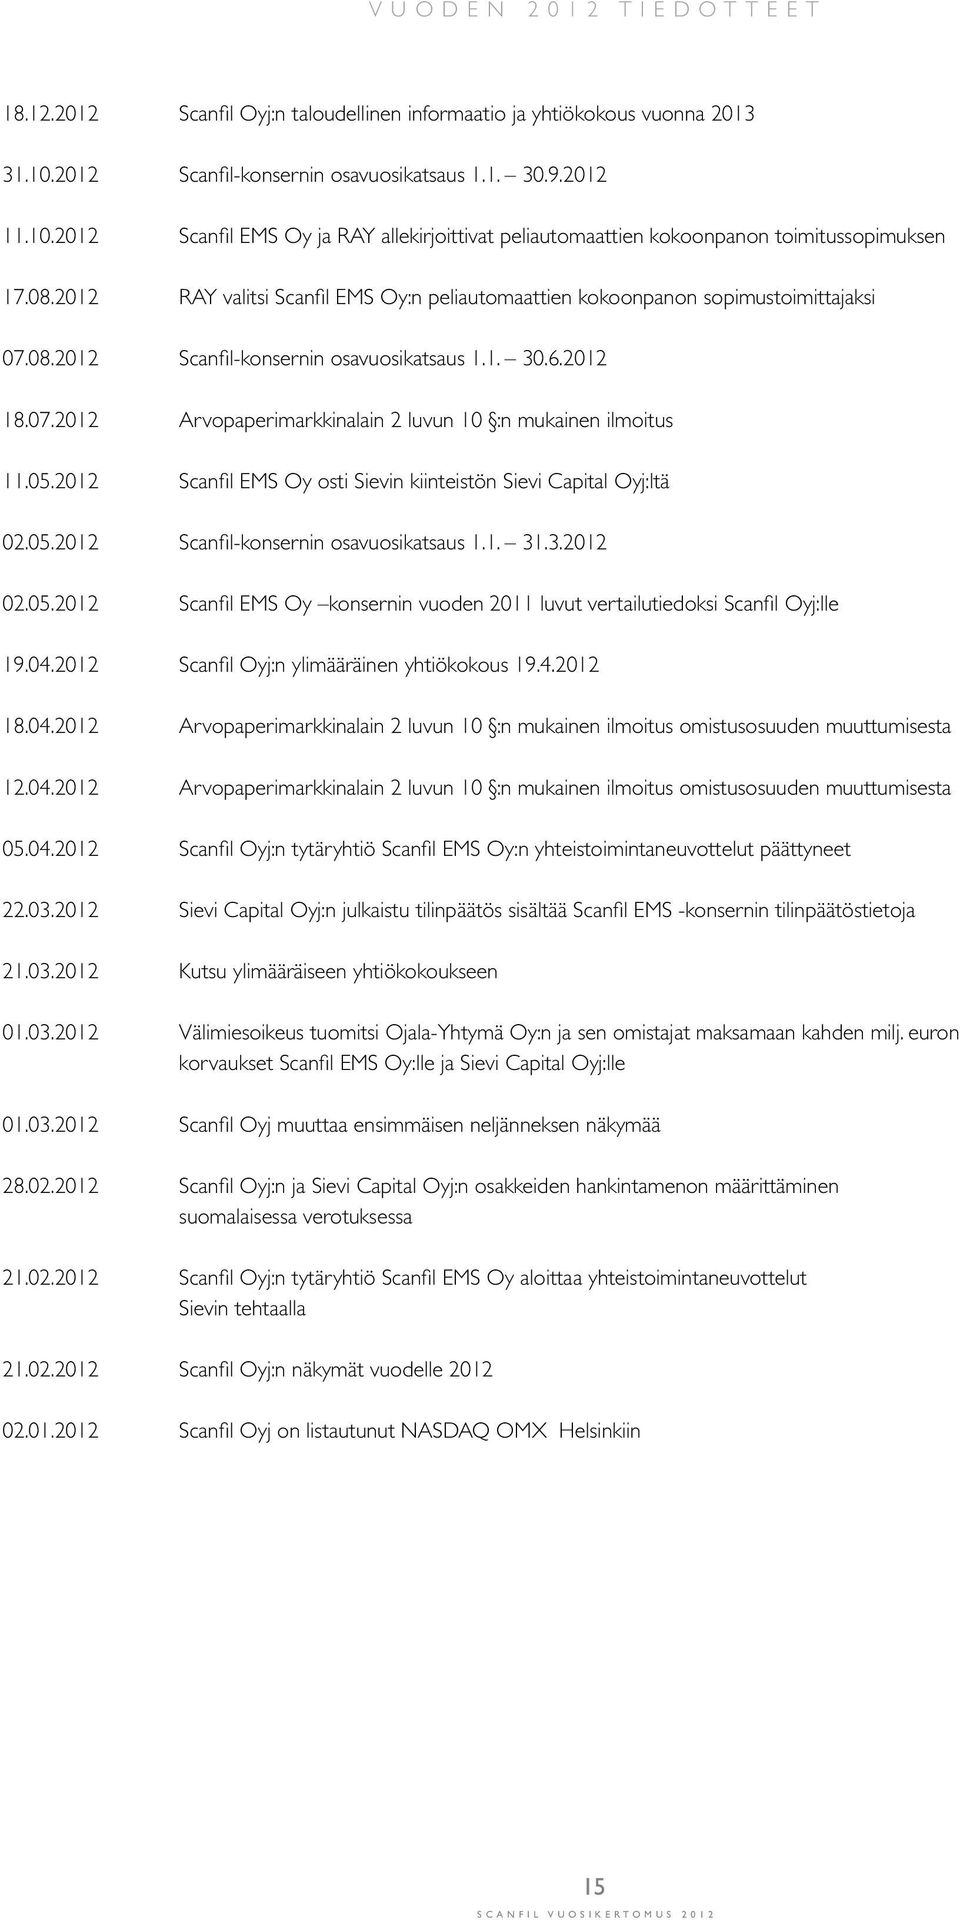 2012 RAY valitsi Scanfil EMS Oy:n peliautomaattien kokoonpanon sopimustoimittajaksi 07.08.2012 Scanfil-konsernin osavuosikatsaus 1.1. 30.6.2012 18.07.2012 Arvopaperimarkkinalain 2 luvun 10 :n mukainen ilmoitus 11.